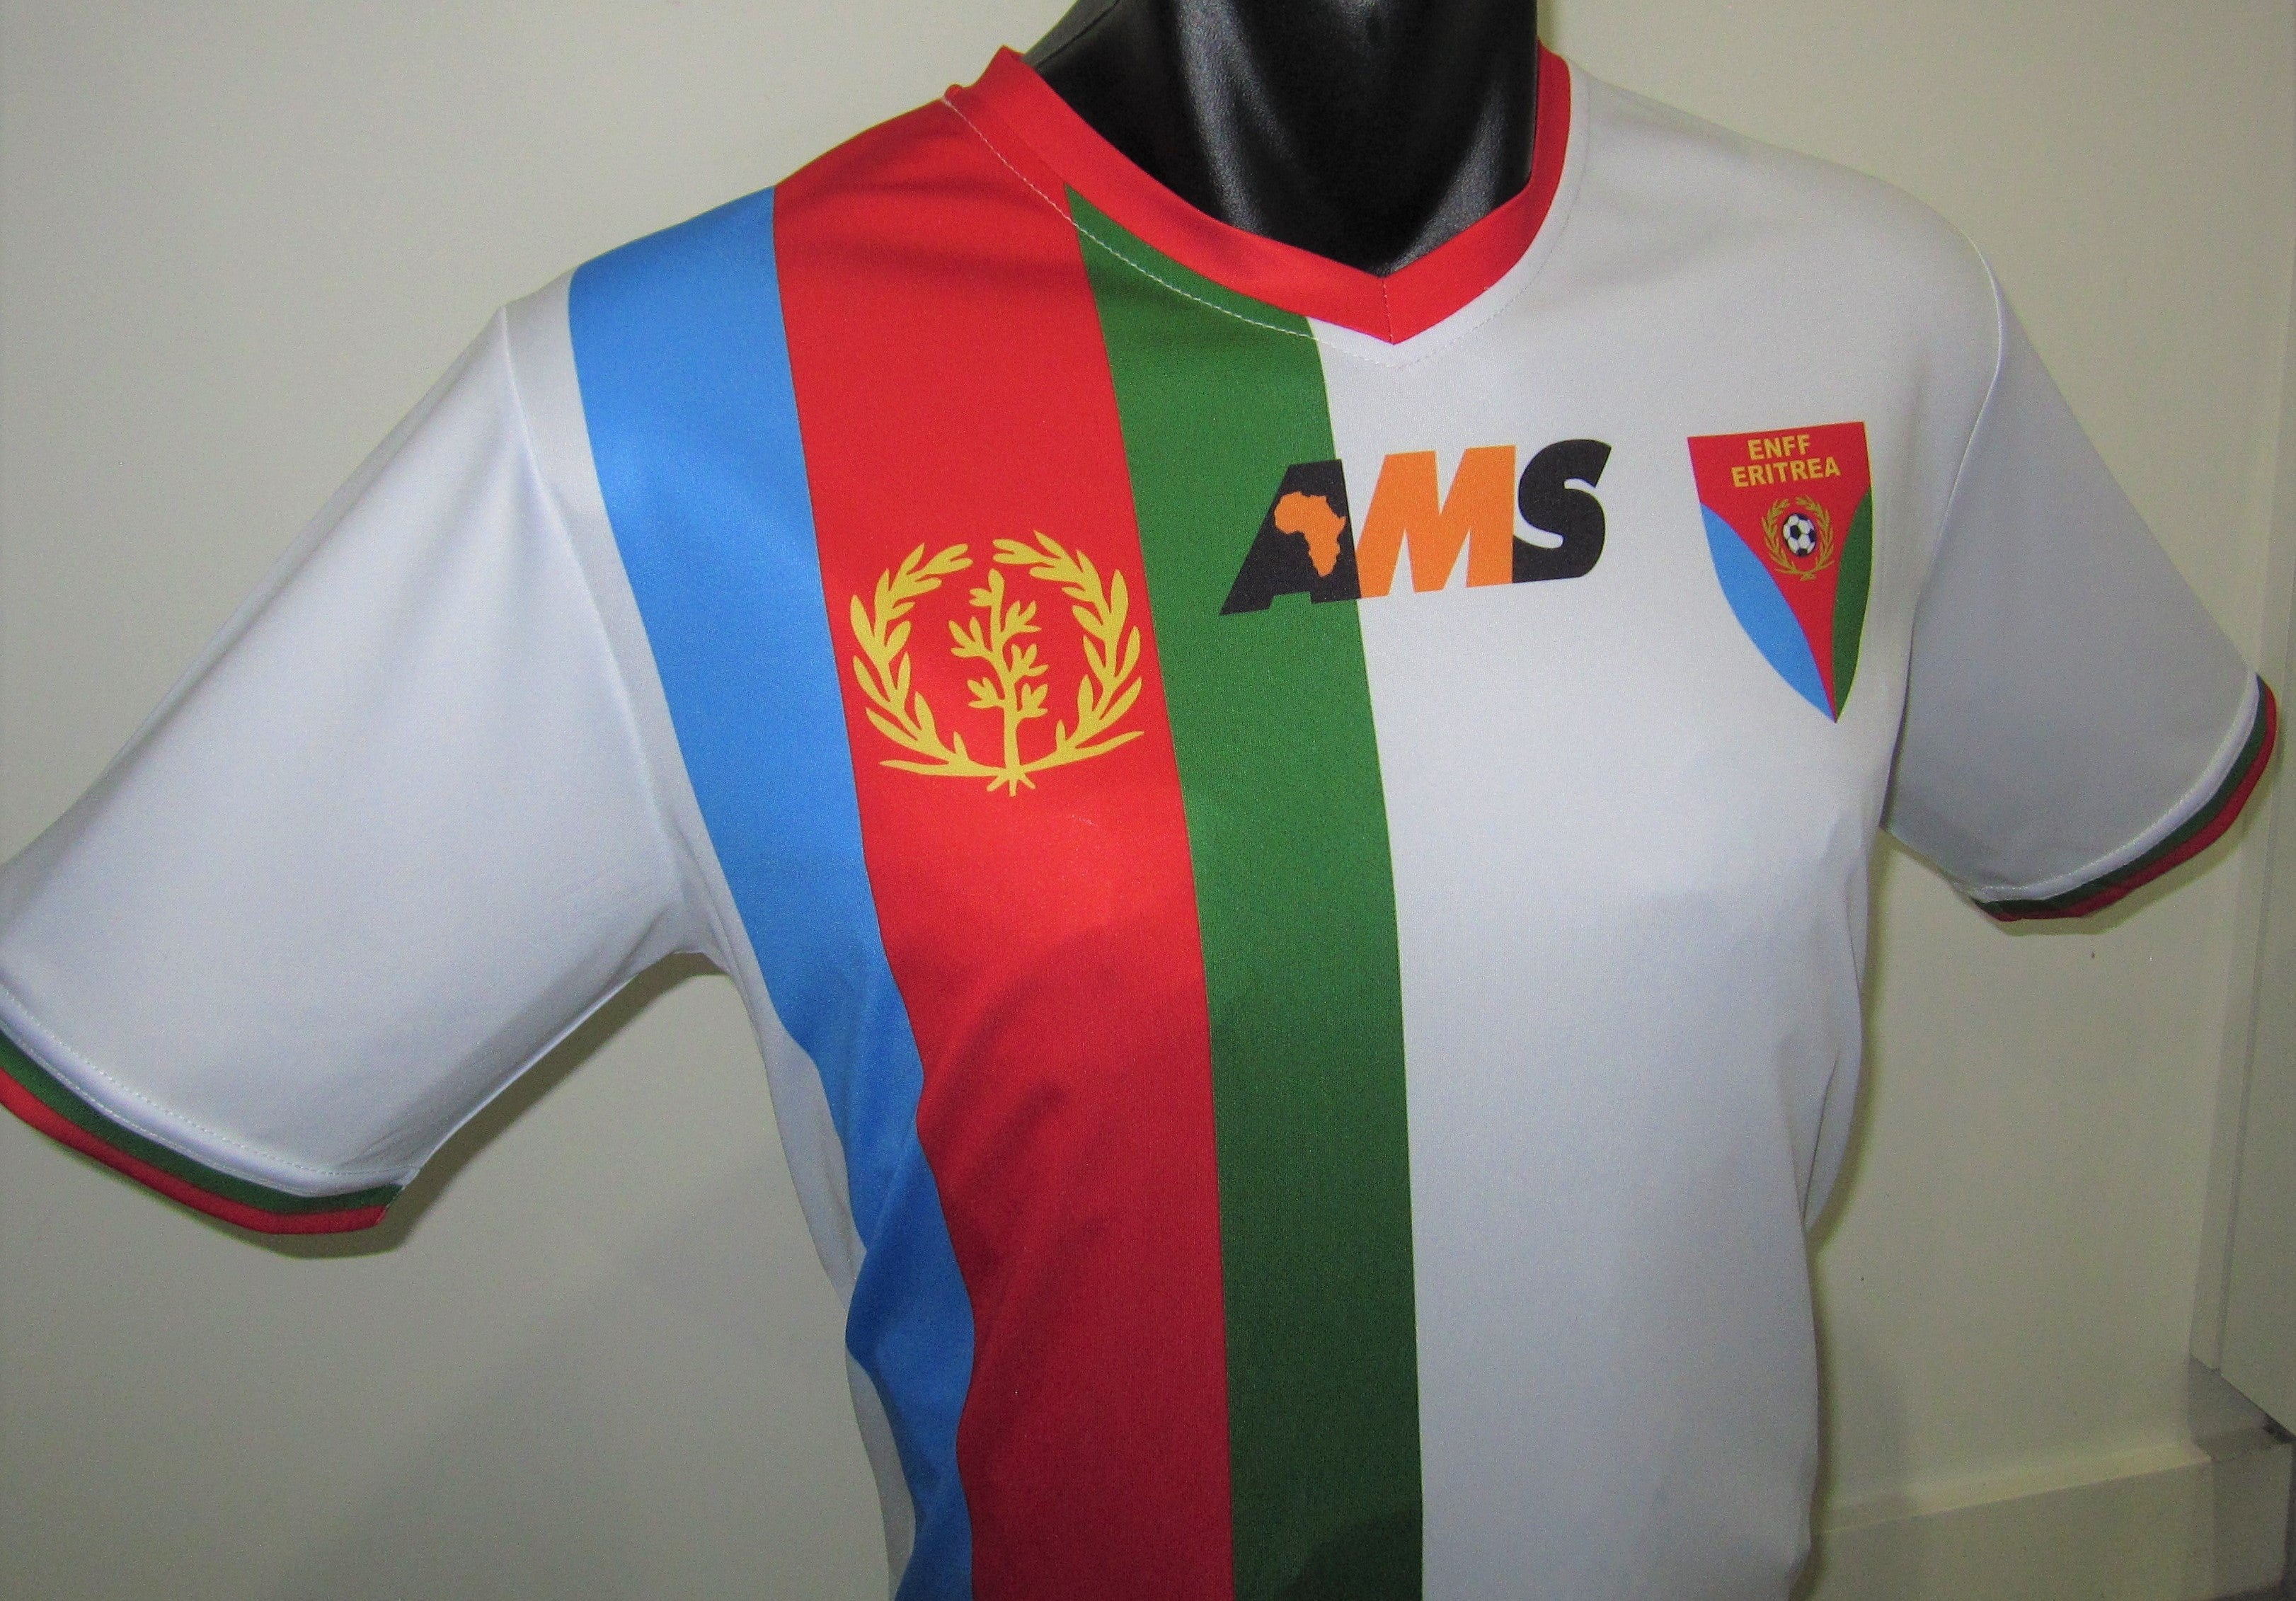 Eritrea 2015-16 Home Jersey/Shirt